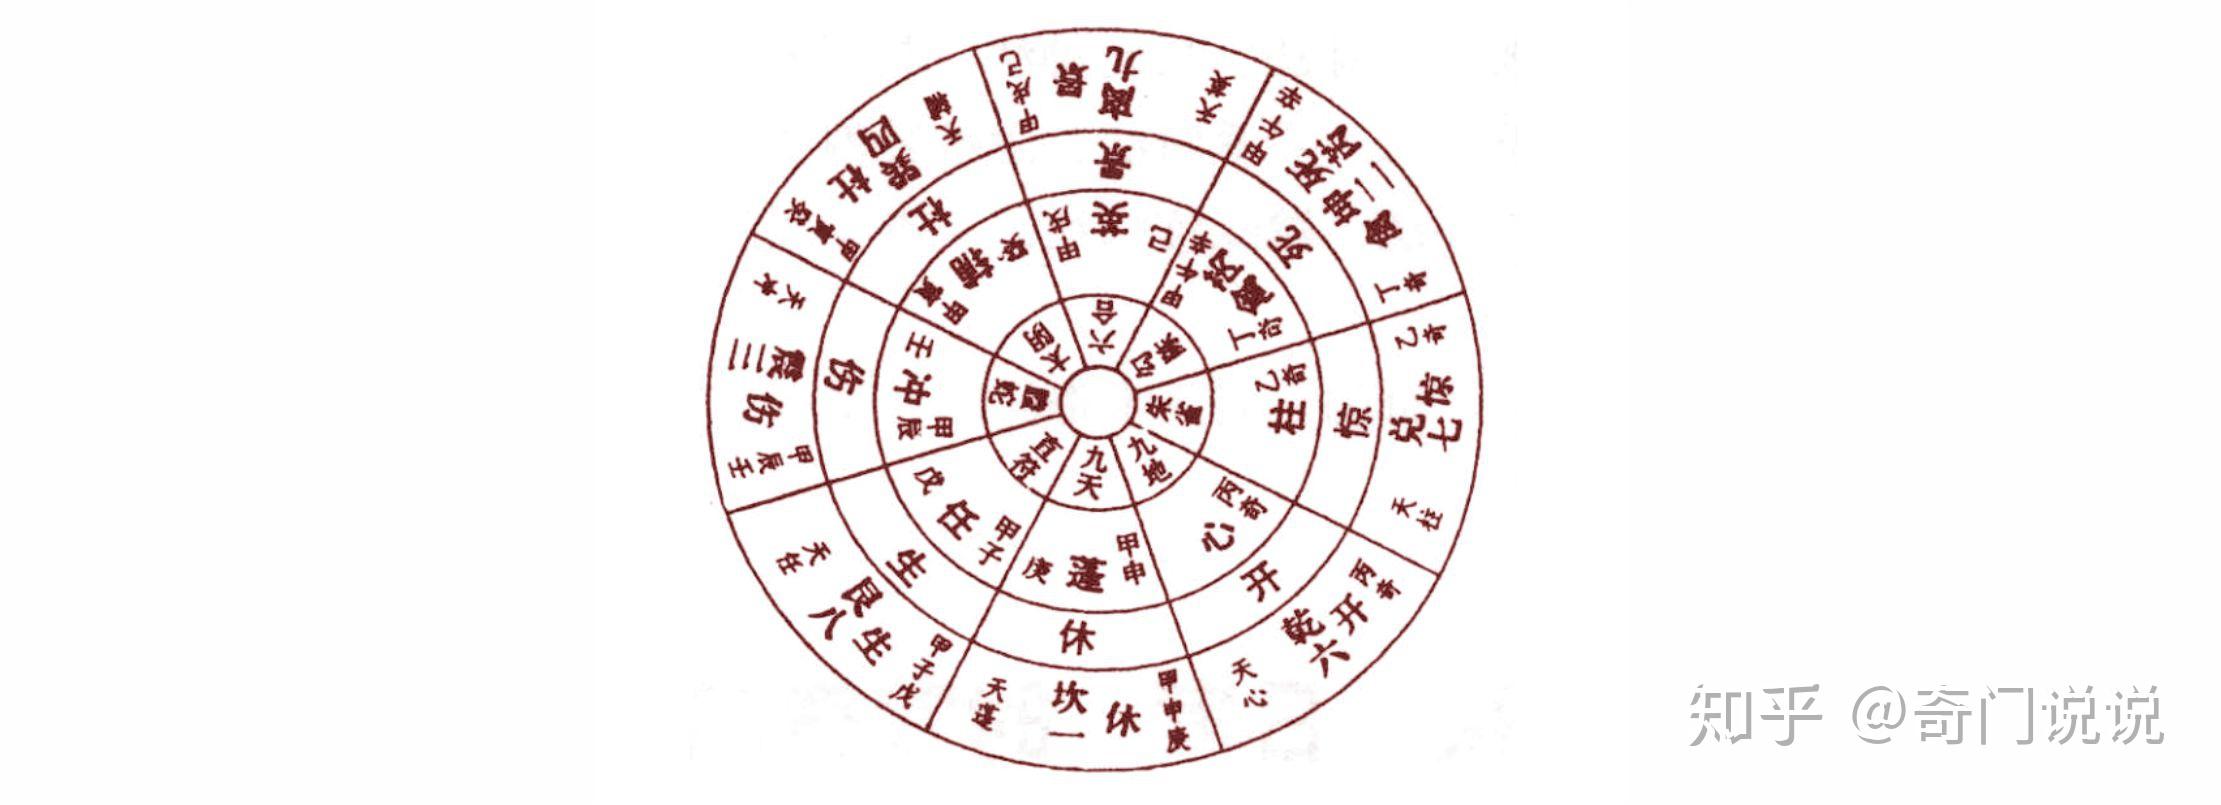 洛书九宫是后天象数的描述语言,因此奇门遁甲从表观而论,蕴涵象数之实